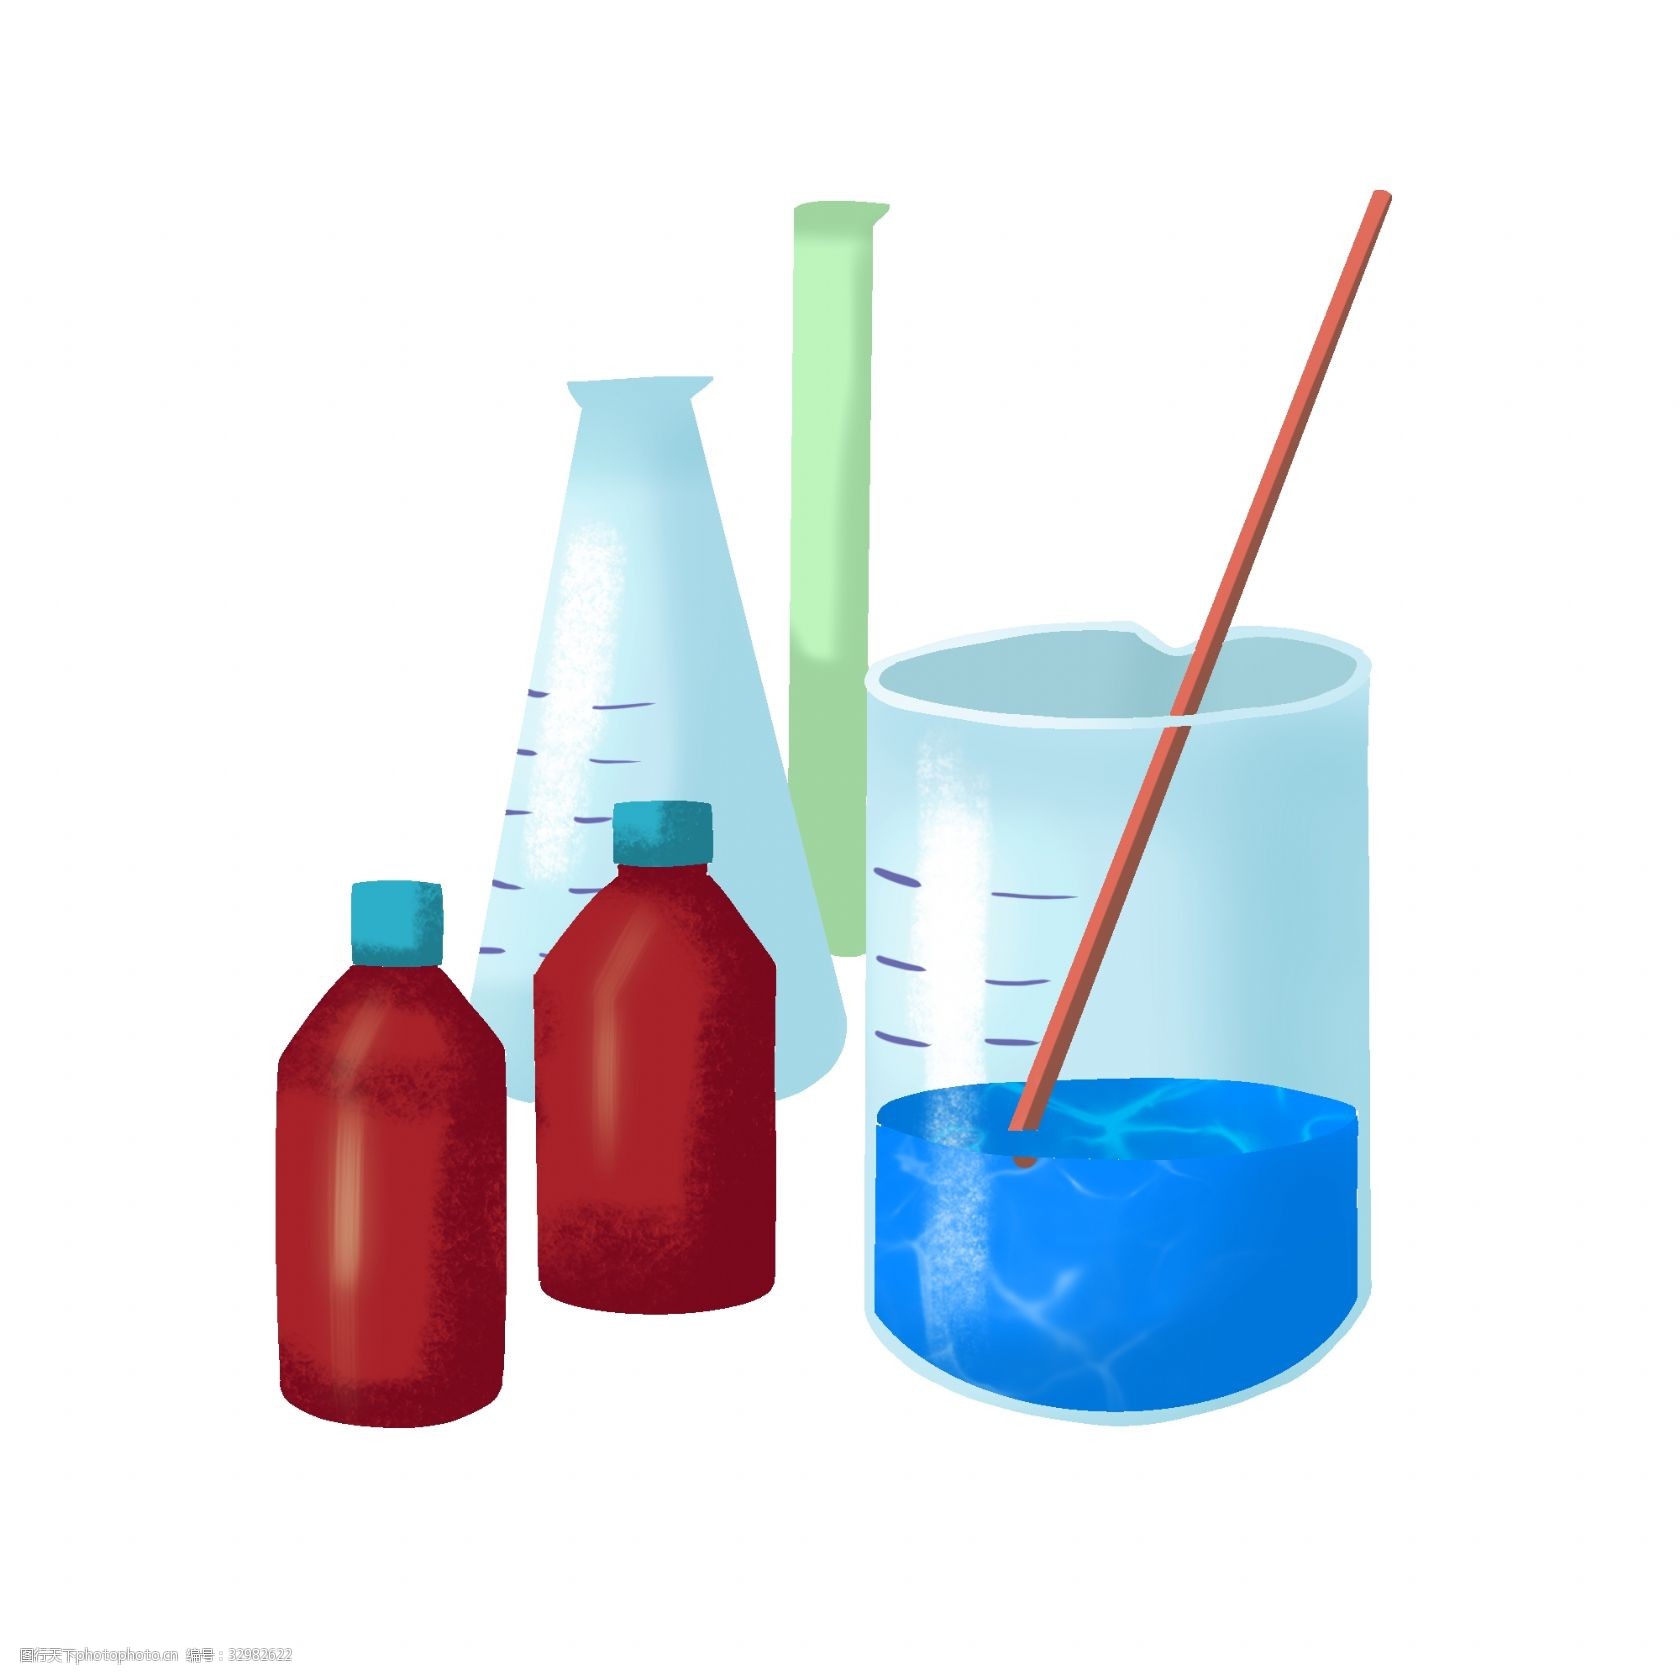 关键词:化学实验药品插画 化学的药品 卡通插画 化学插画 化学实验